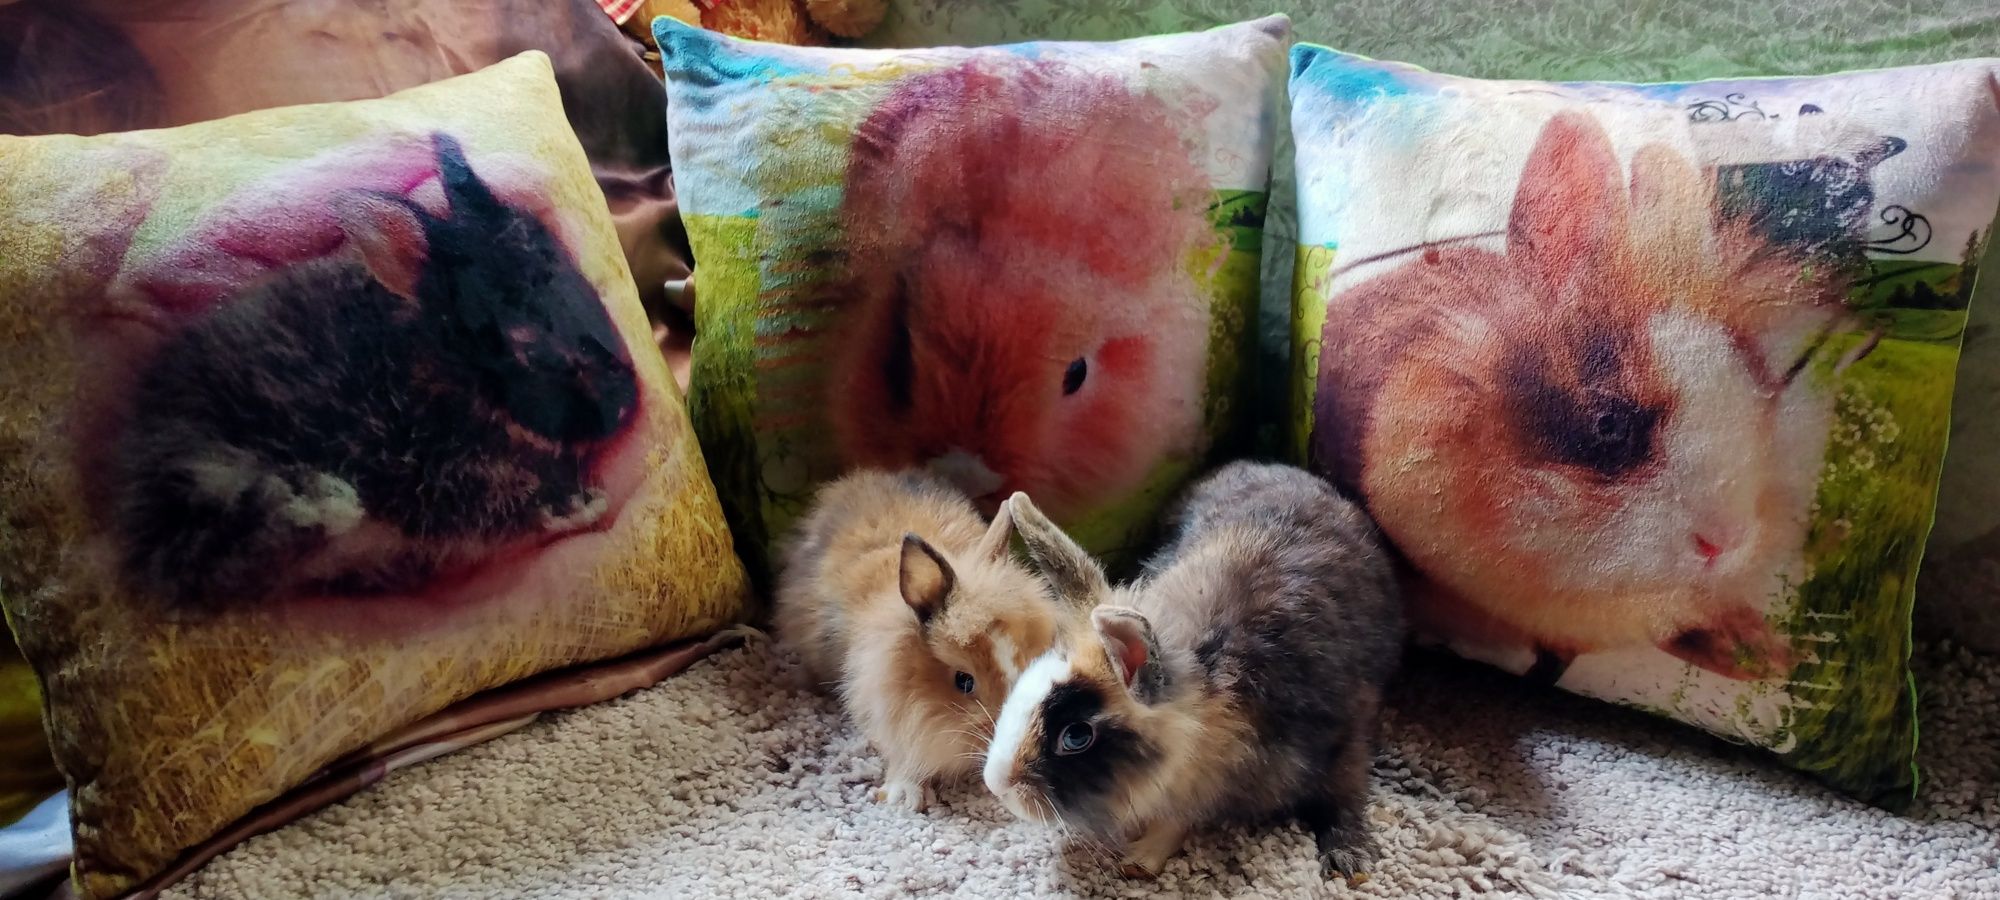 Декоративне кроленятко плюс подаруночок подушка з його фото